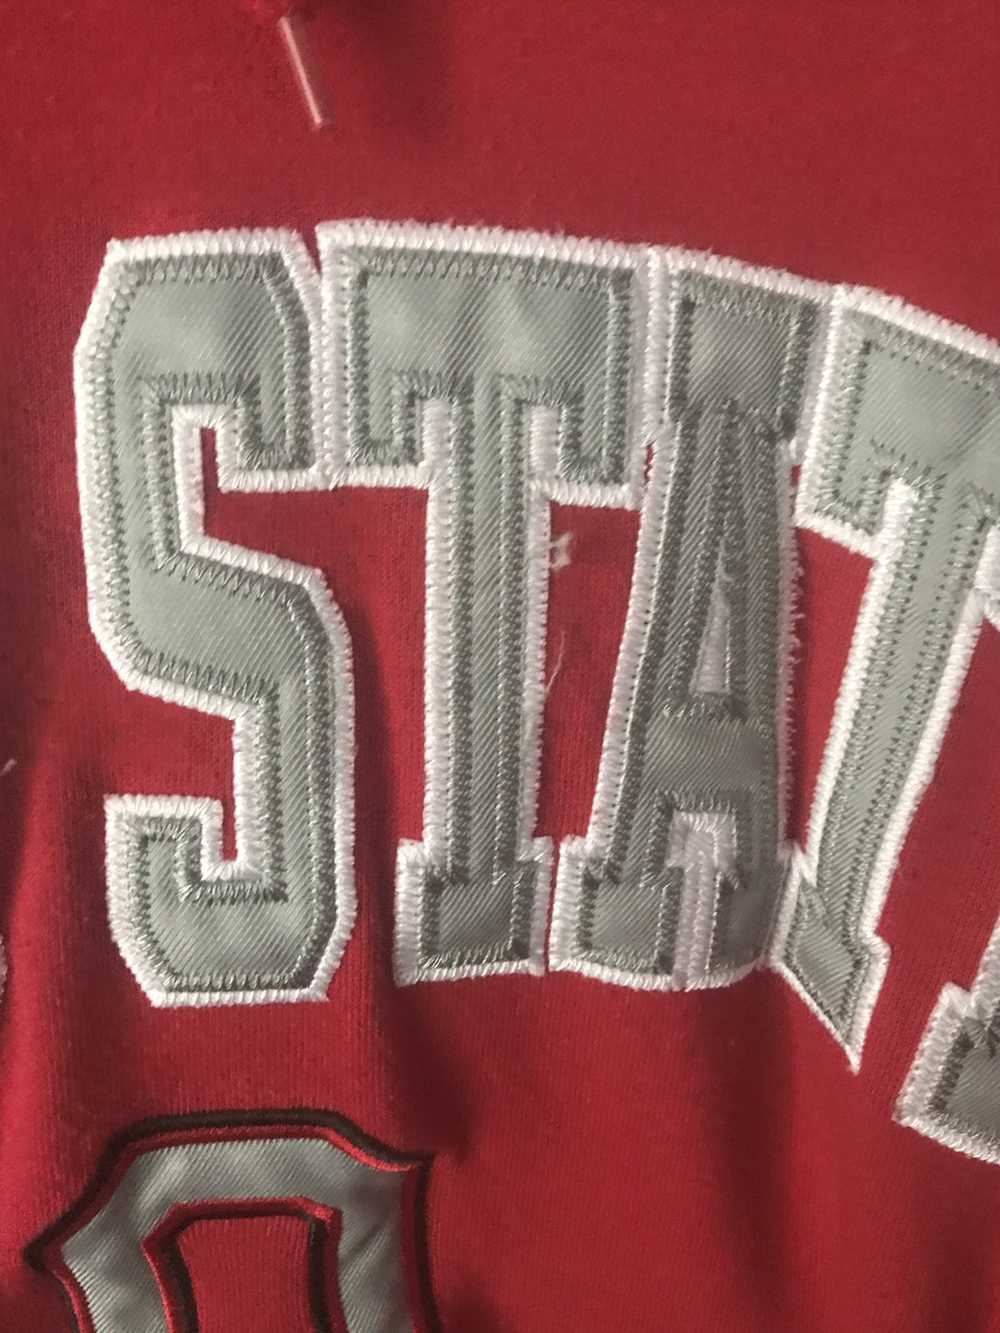 Ncaa NCAA x Ohio State University sweatshirt - image 3